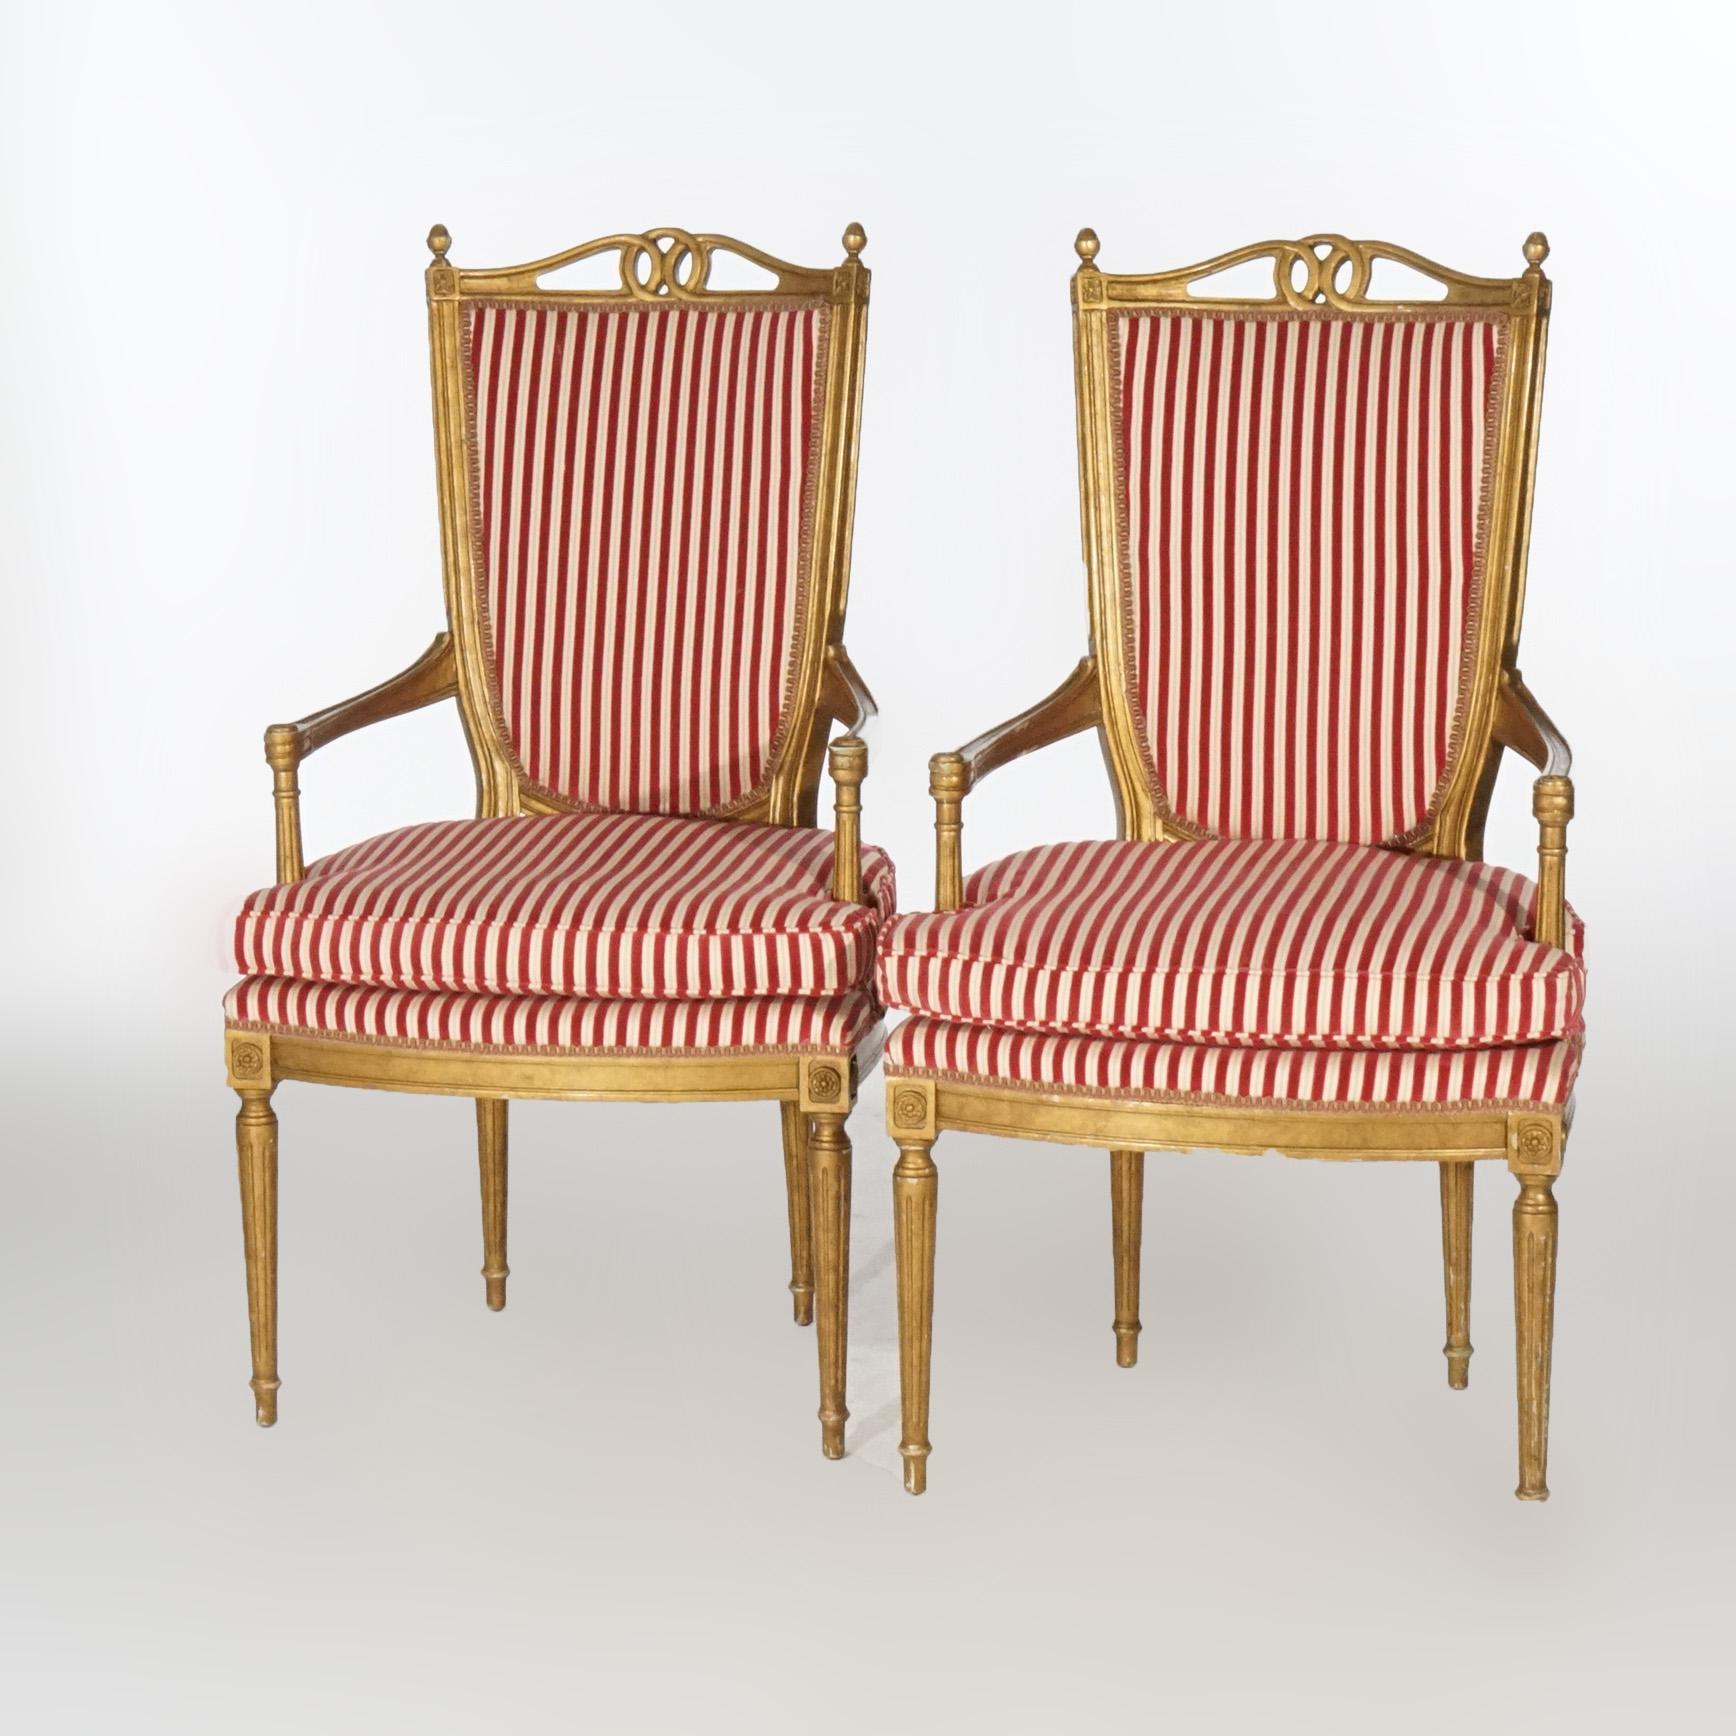 Ein Paar französischer Sessel im Louis-XVI-Stil mit vergoldeten Rahmen und gepolsterten Rückenlehnen und Sitzen, schildförmige Rückenlehnen mit flankierenden Endstücken, auf konischen, gedrechselten Beinen, 20.

Maße: 44,5''H x 24,5''B x 25,5''T.